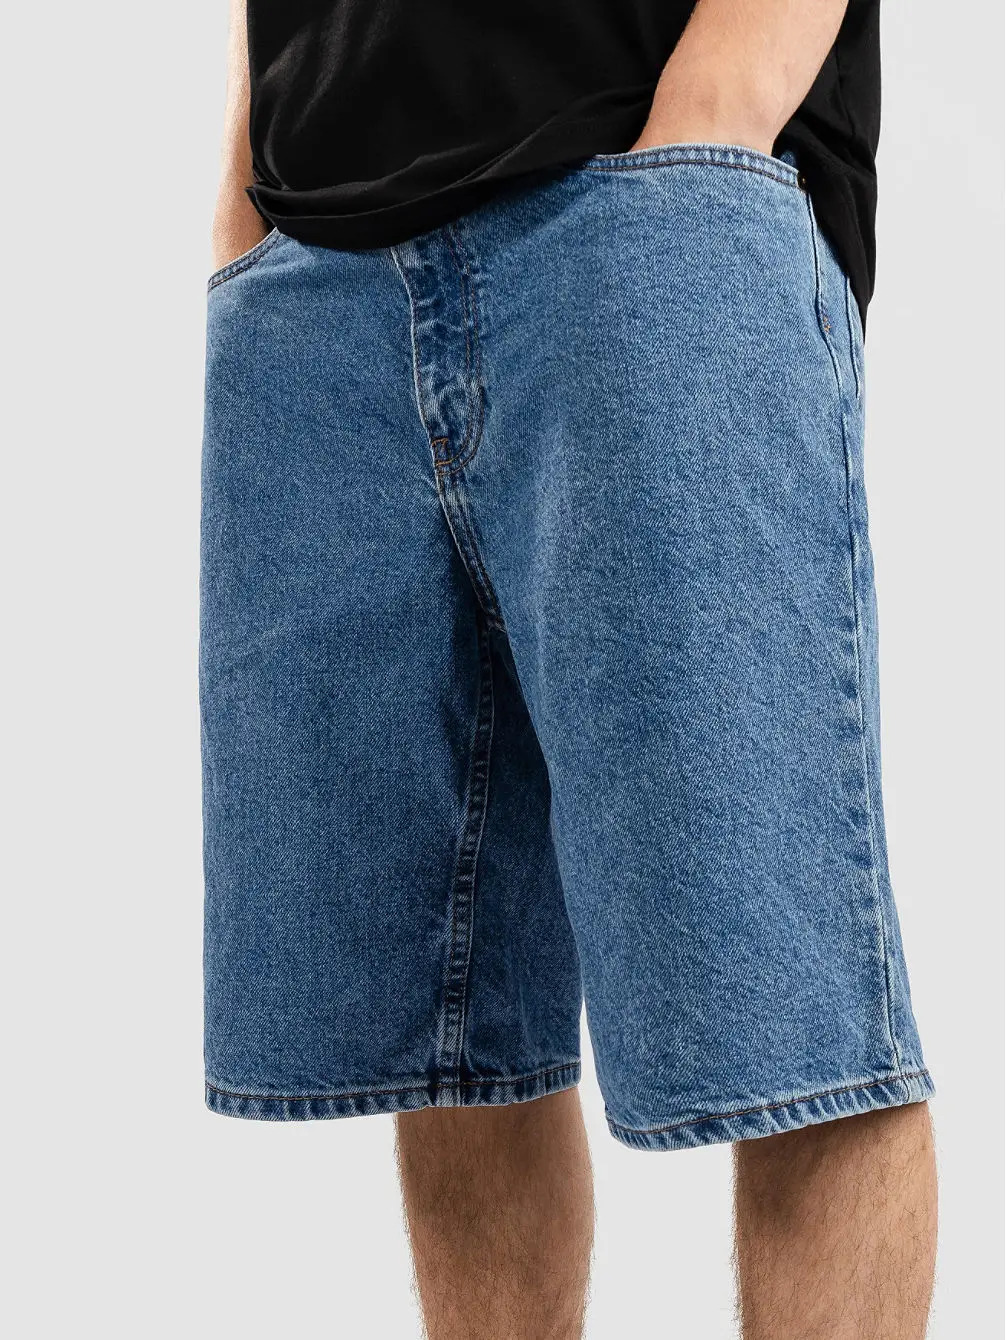 Wholesale Customized Zy Men Zipper Fly Loose Fit 100%cotton Denim Pants ...